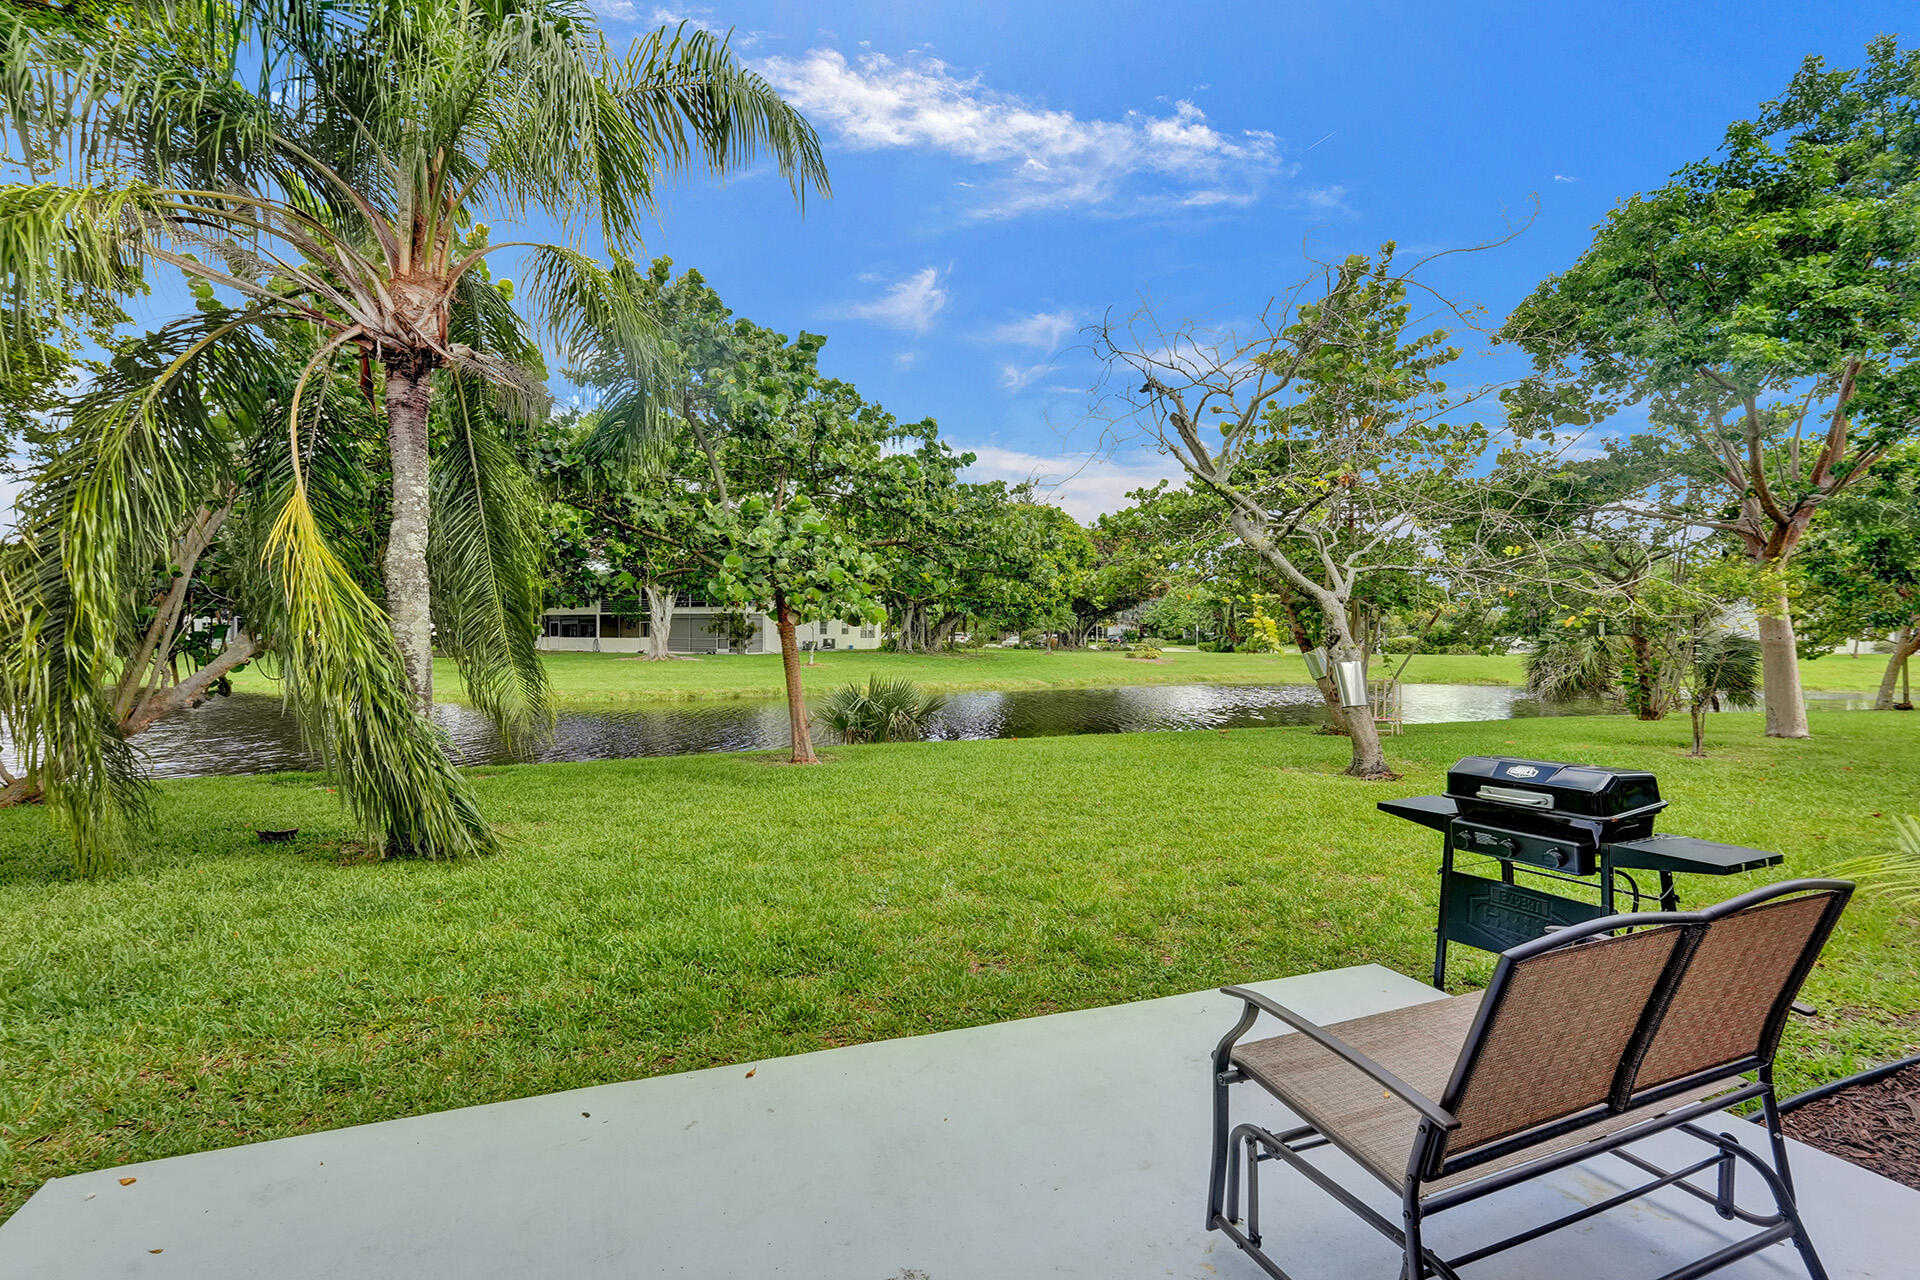 View Deerfield Beach, FL 33442 residential property